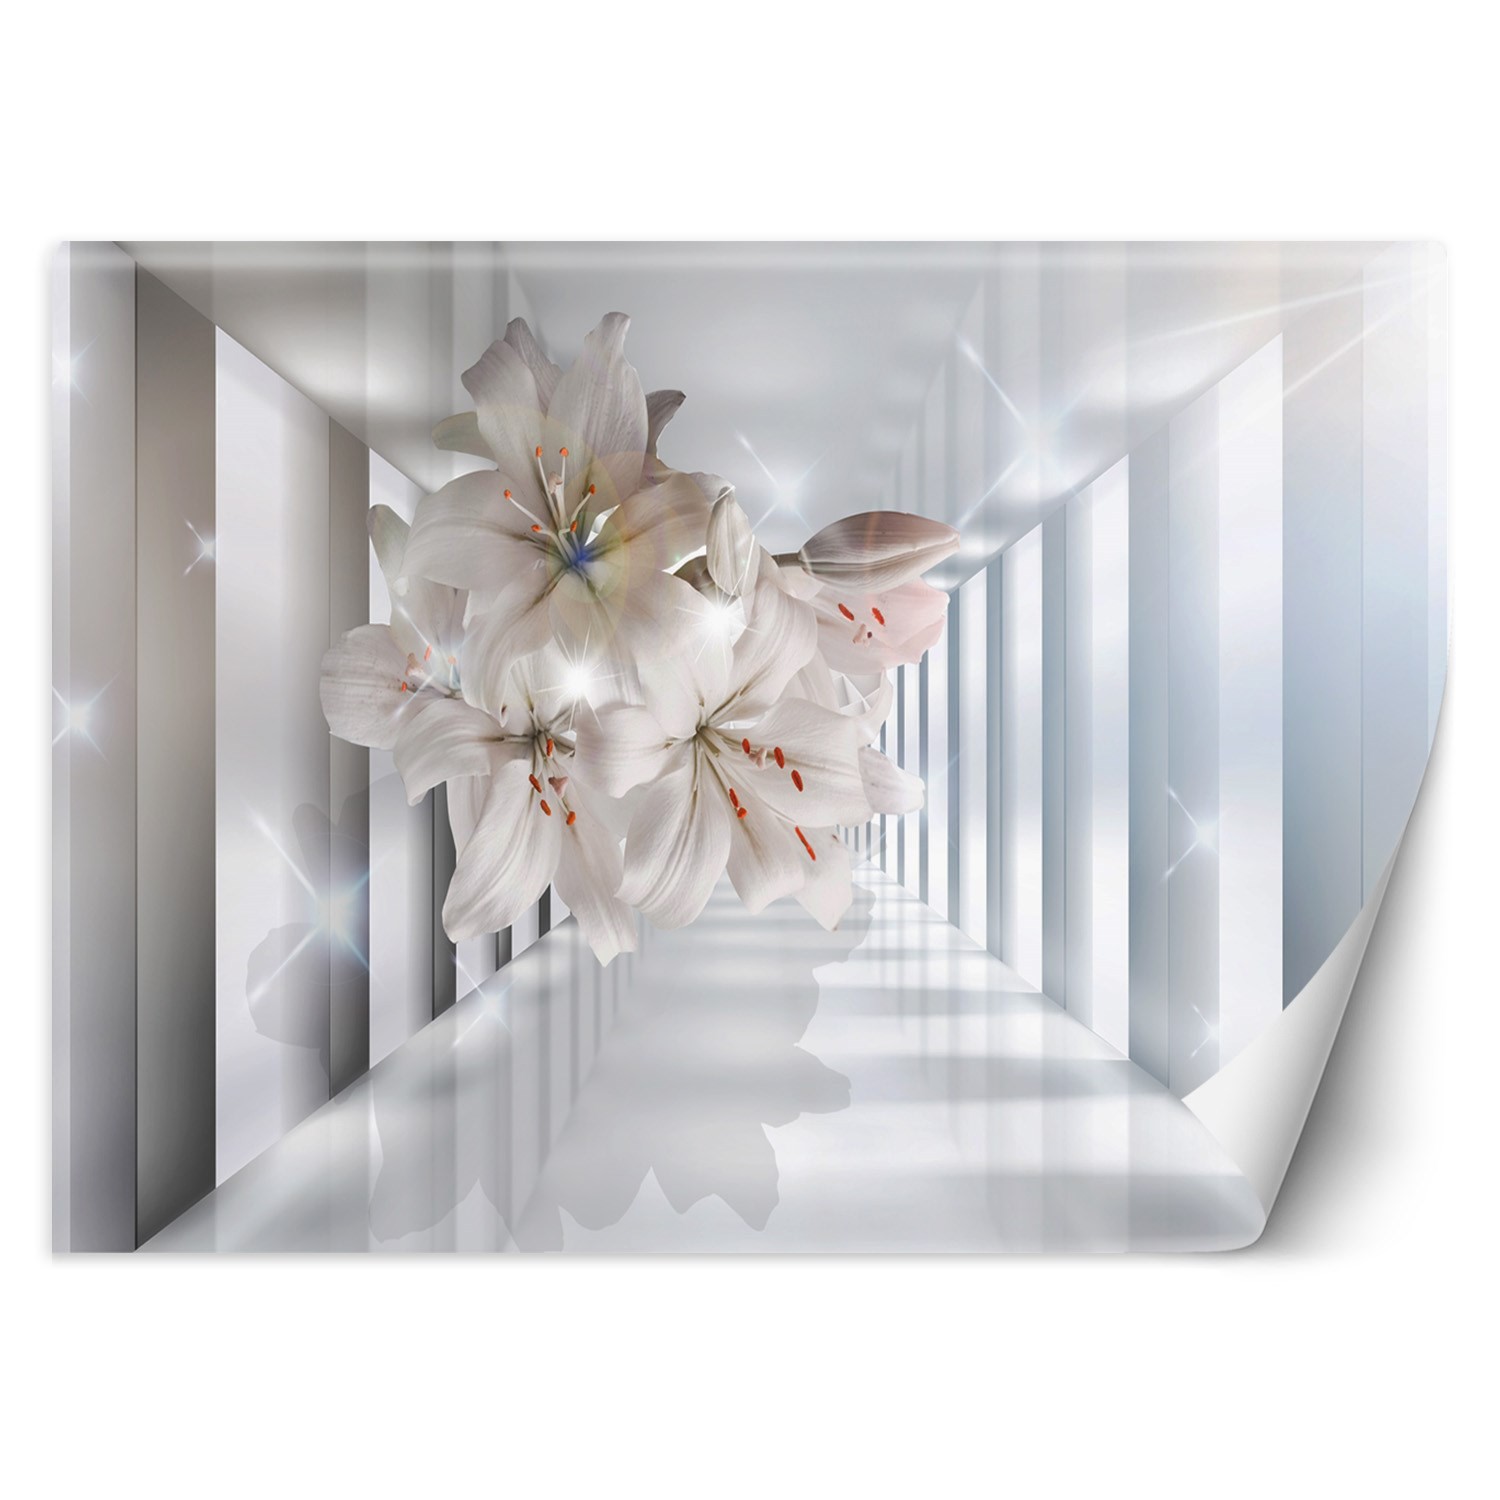 Trend24 – Behang – Bloemen In De Corridor 3D – Behangpapier – Fotobehang 3D – Behang Woonkamer – 250x175x2 cm – Incl. behanglijm